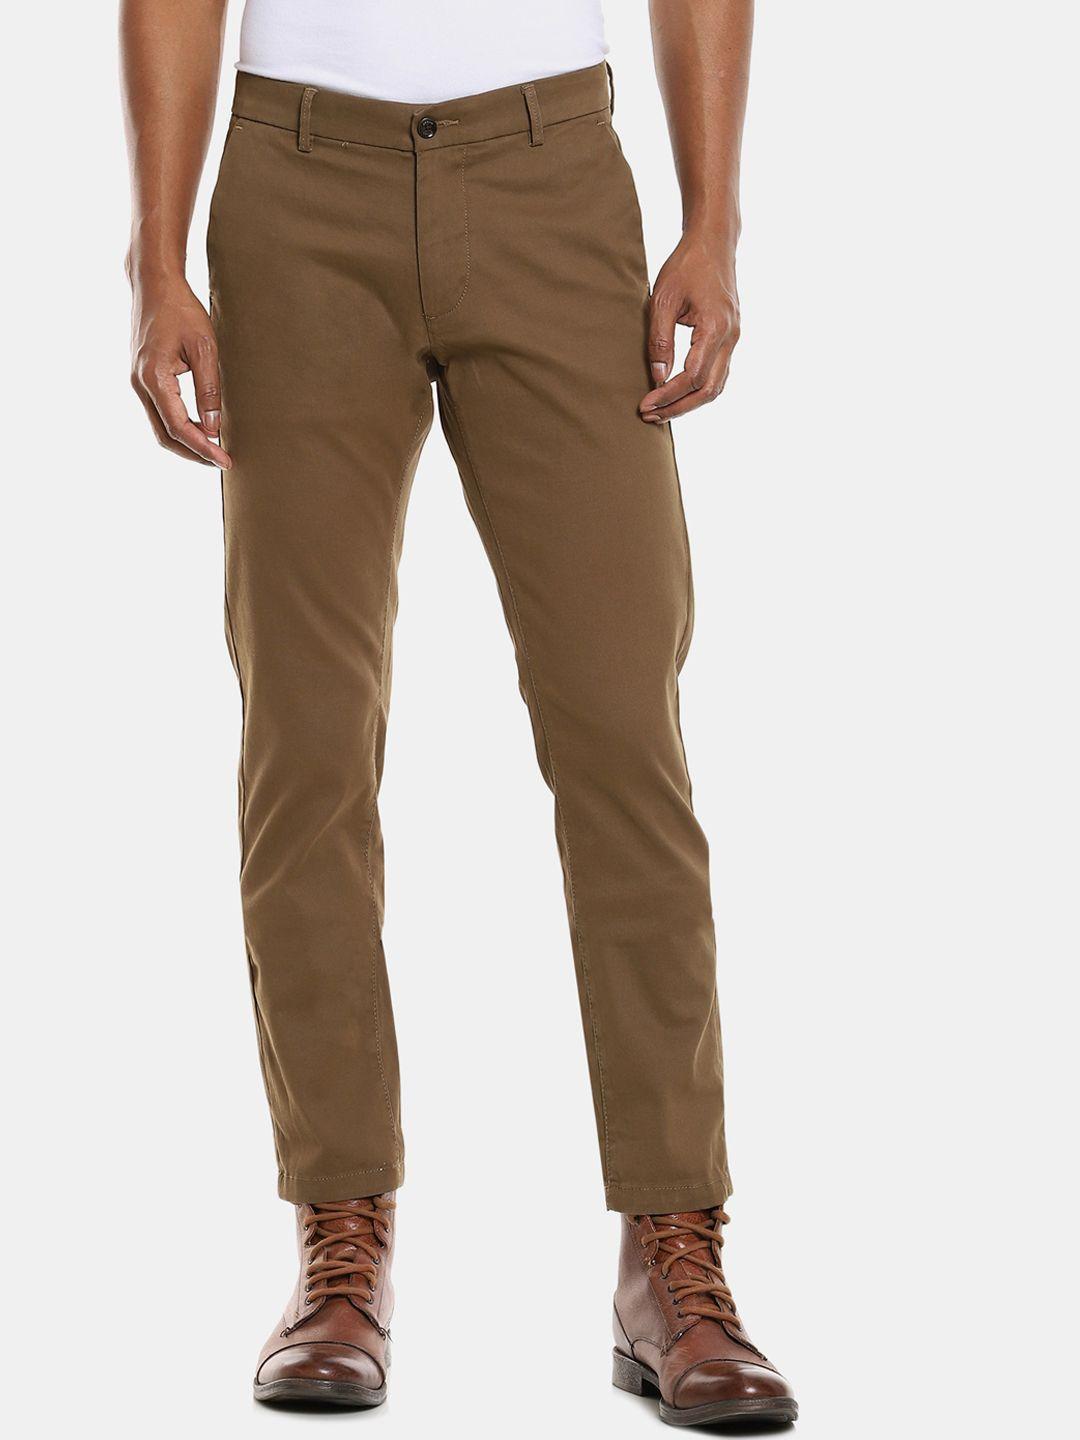 arrow-sport-men-brown-trousers